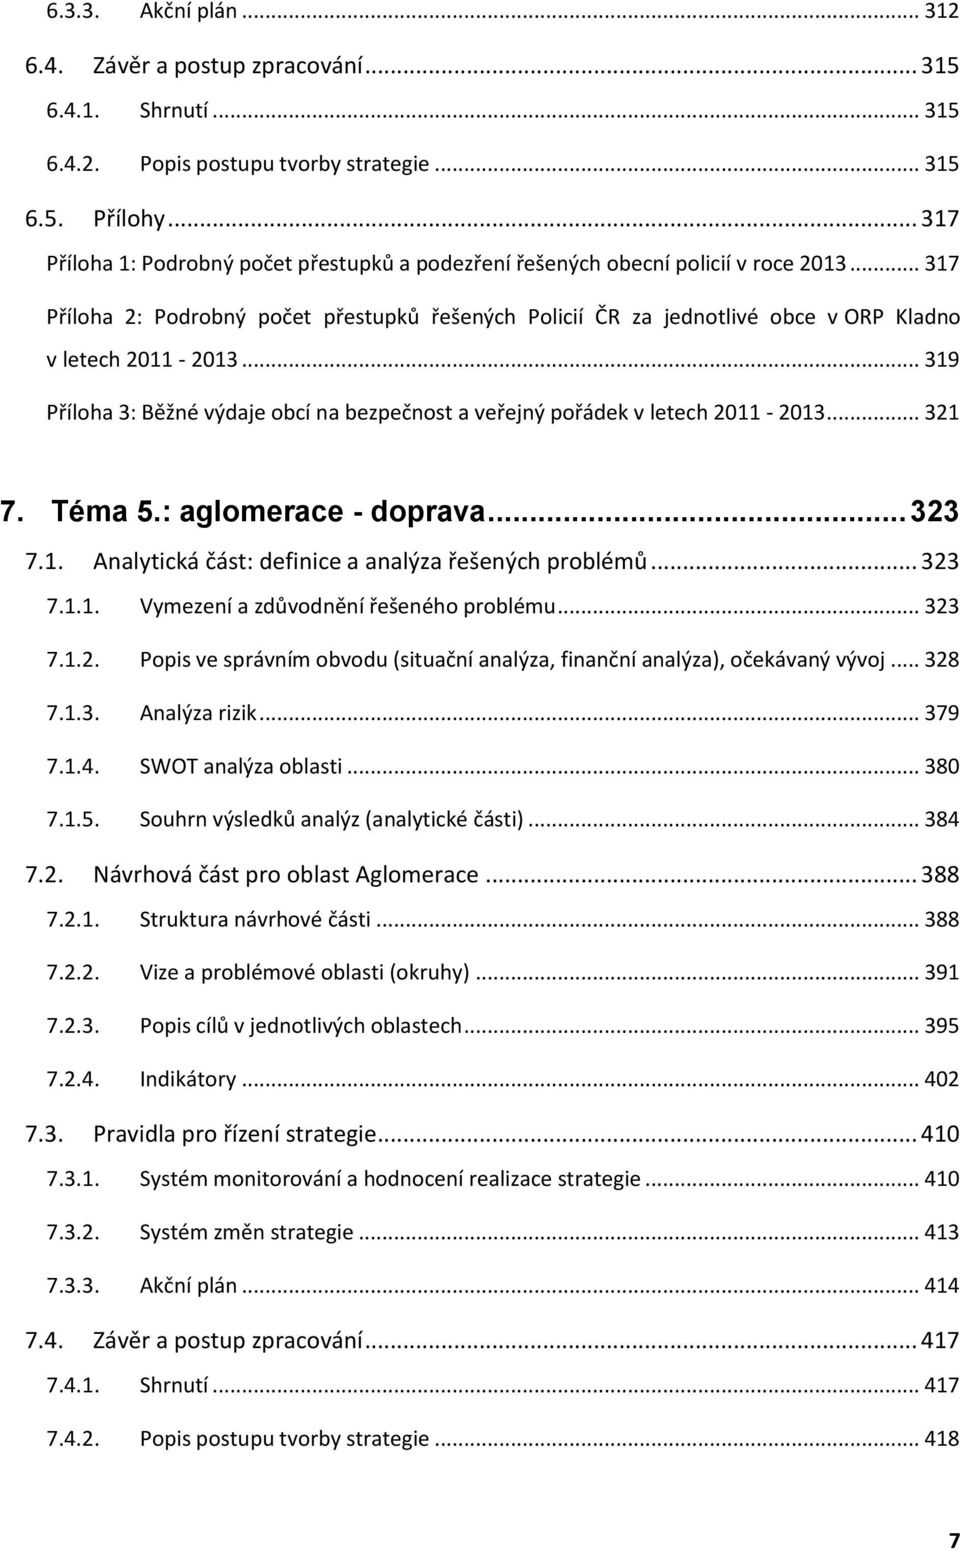 .. 317 Příloha 2: Podrobný počet přestupků řešených Policií ČR za jednotlivé obce v ORP Kladno v letech 2011-2013... 319 Příloha 3: Běžné výdaje obcí na bezpečnost a veřejný pořádek v letech 2011-2013.